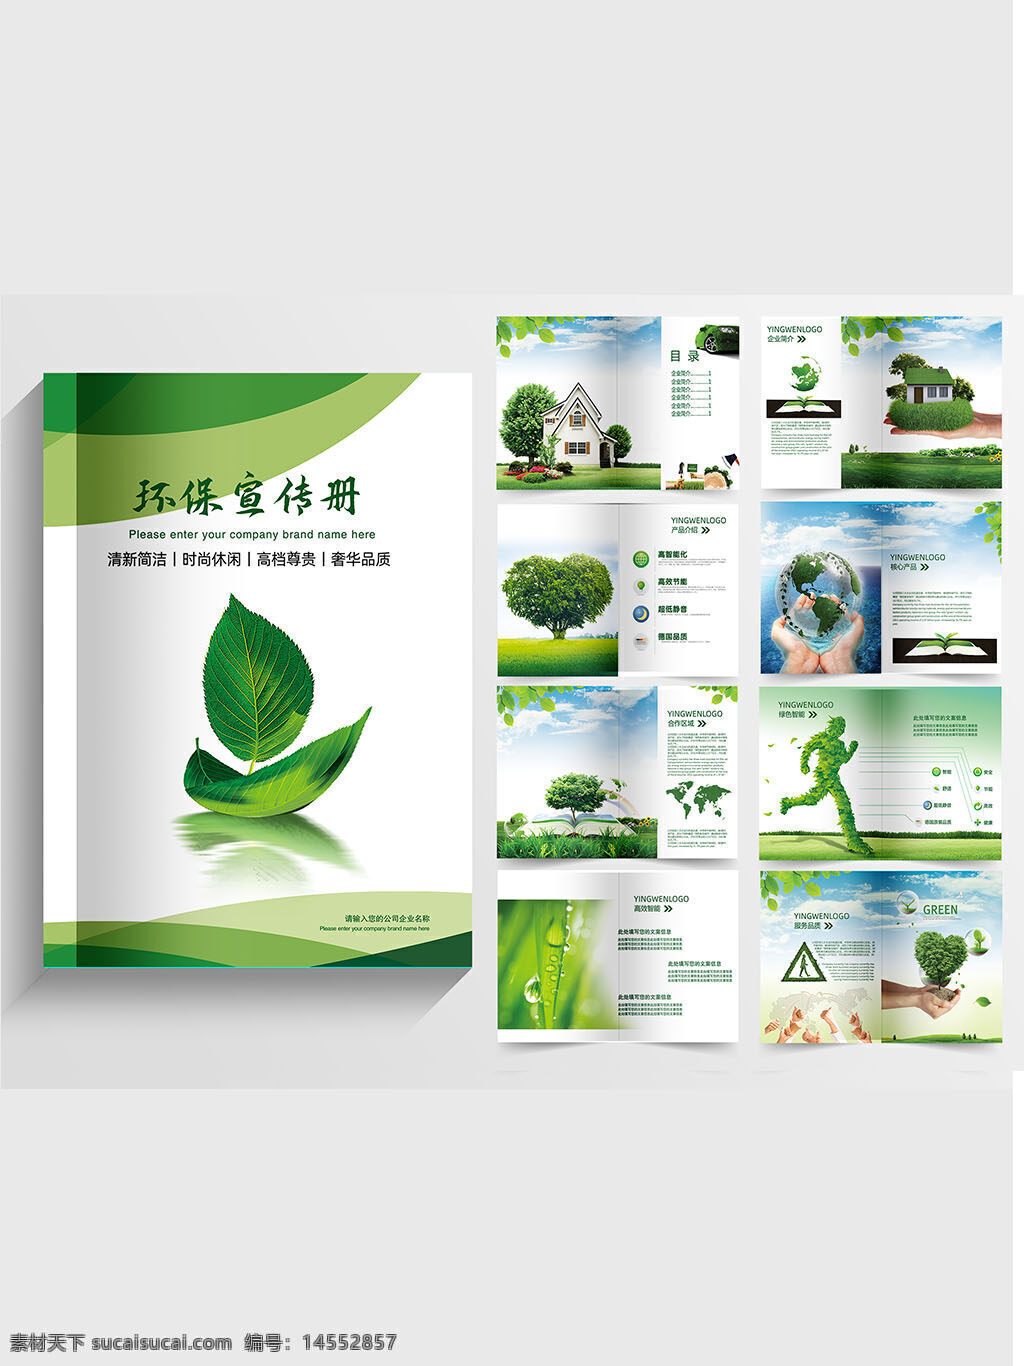 企业画册 环保画册 绿色画册 公司画册 发展画册